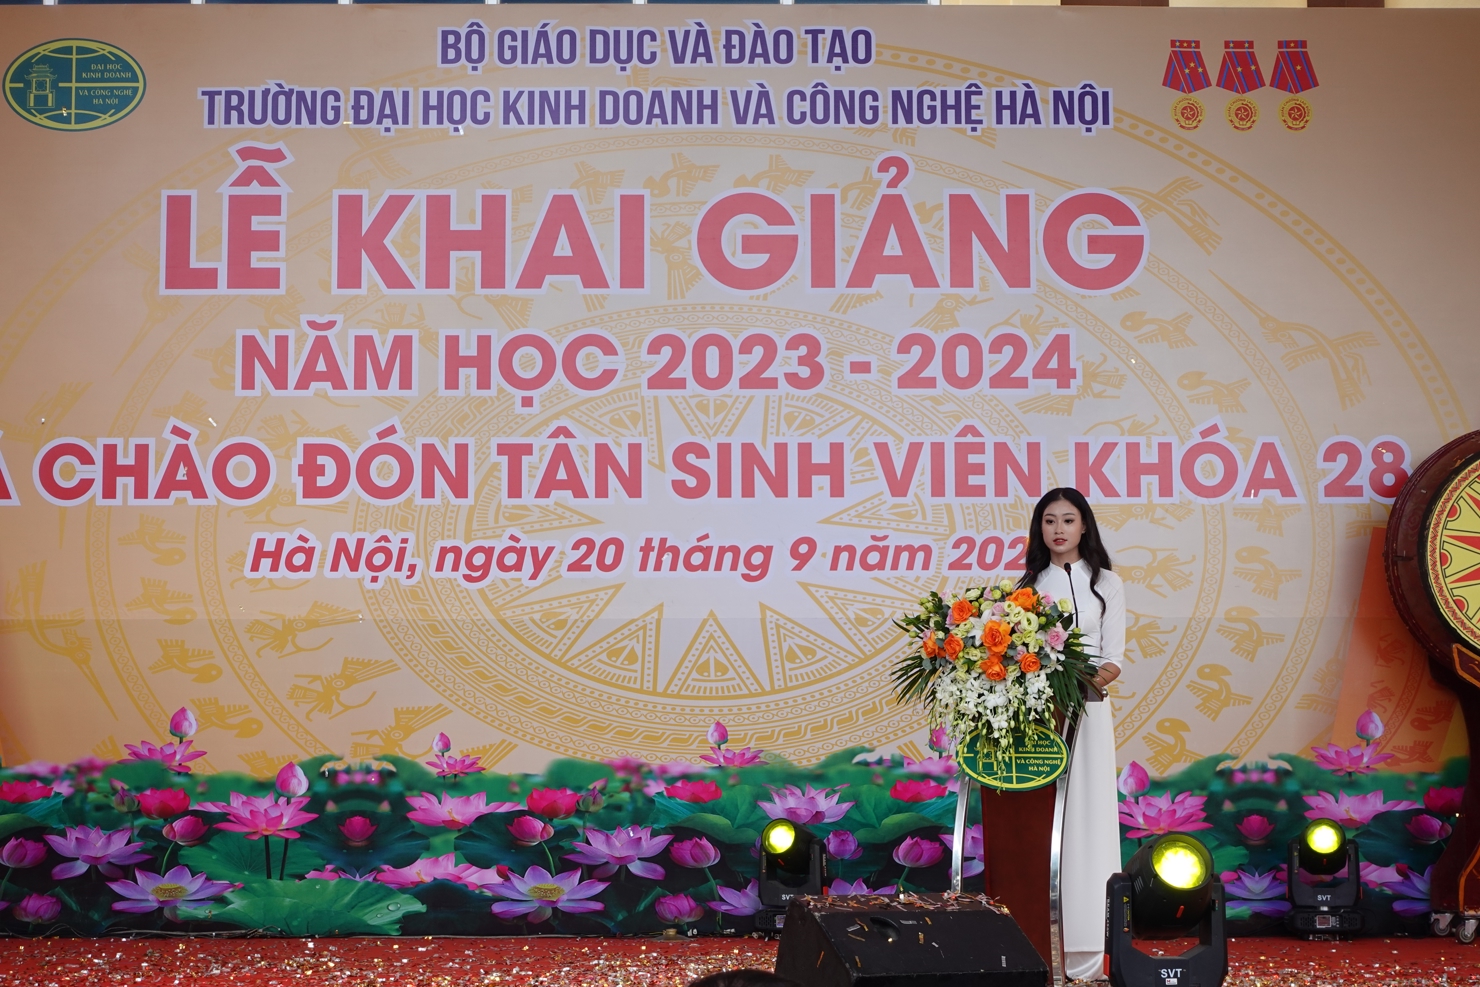 Trường Đại học Kinh doanh và Công nghệ Hà Nội khai giảng năm học 2023-2024 - Ảnh 2.